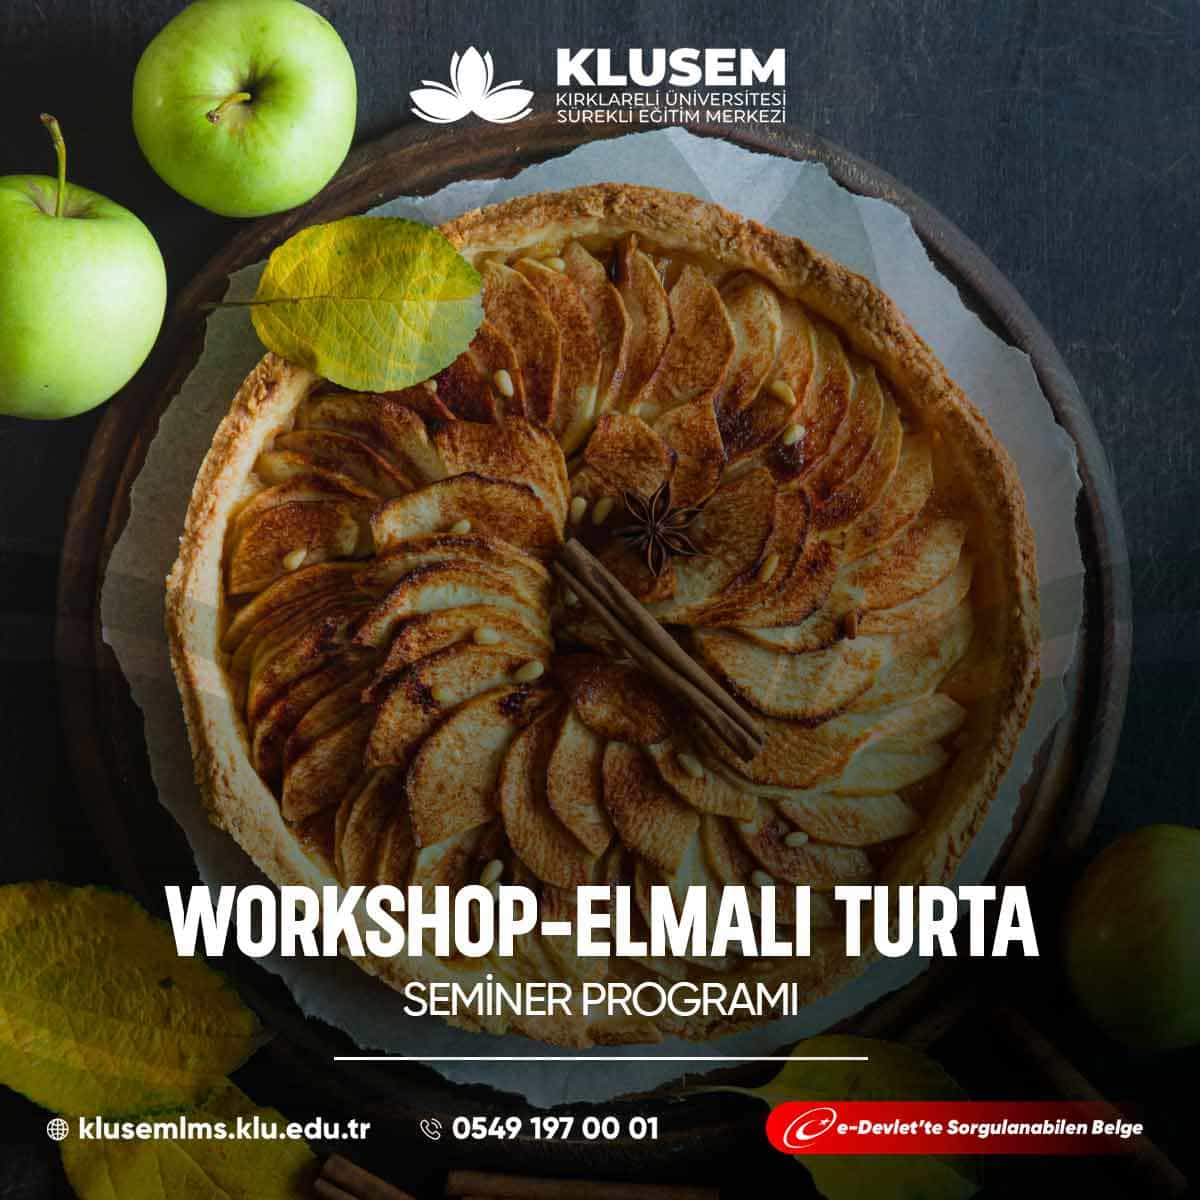 "Elmalı Turta Workshop," katılımcılara klasik bir tatlı olan elmalı turta yapmayı öğrenme fırsatı sunar.